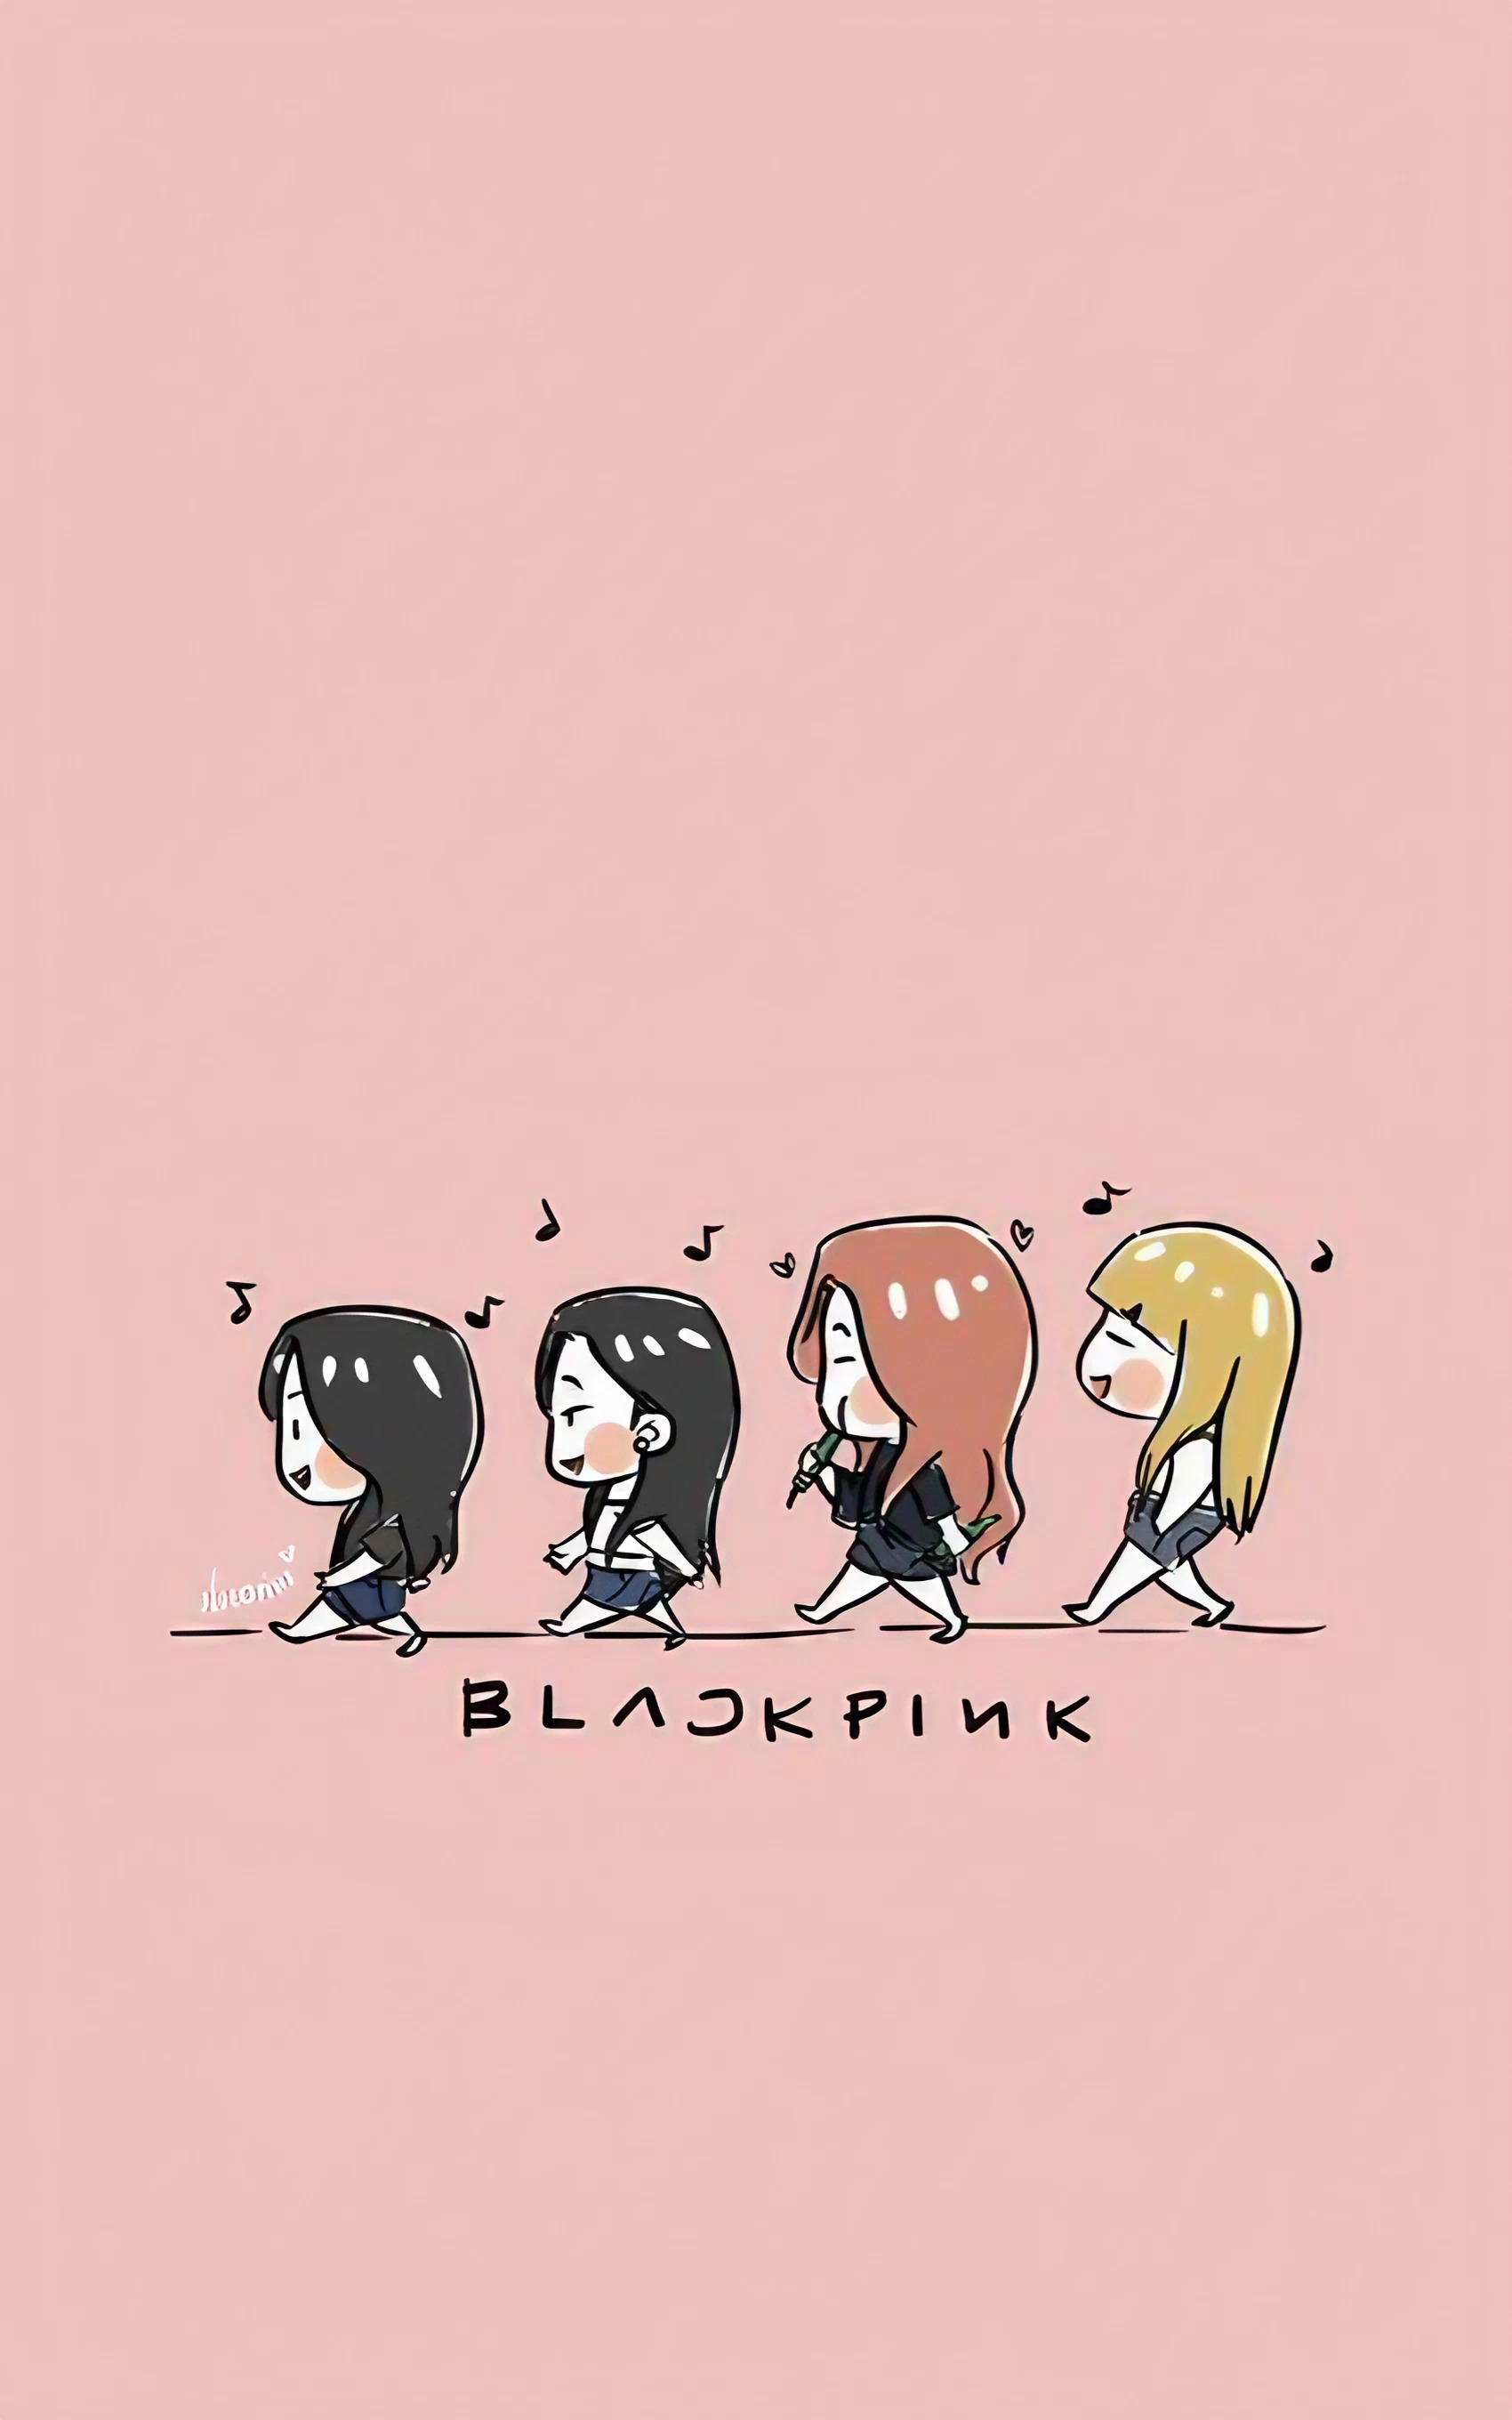 Blackpink Cartoon - Pink Background